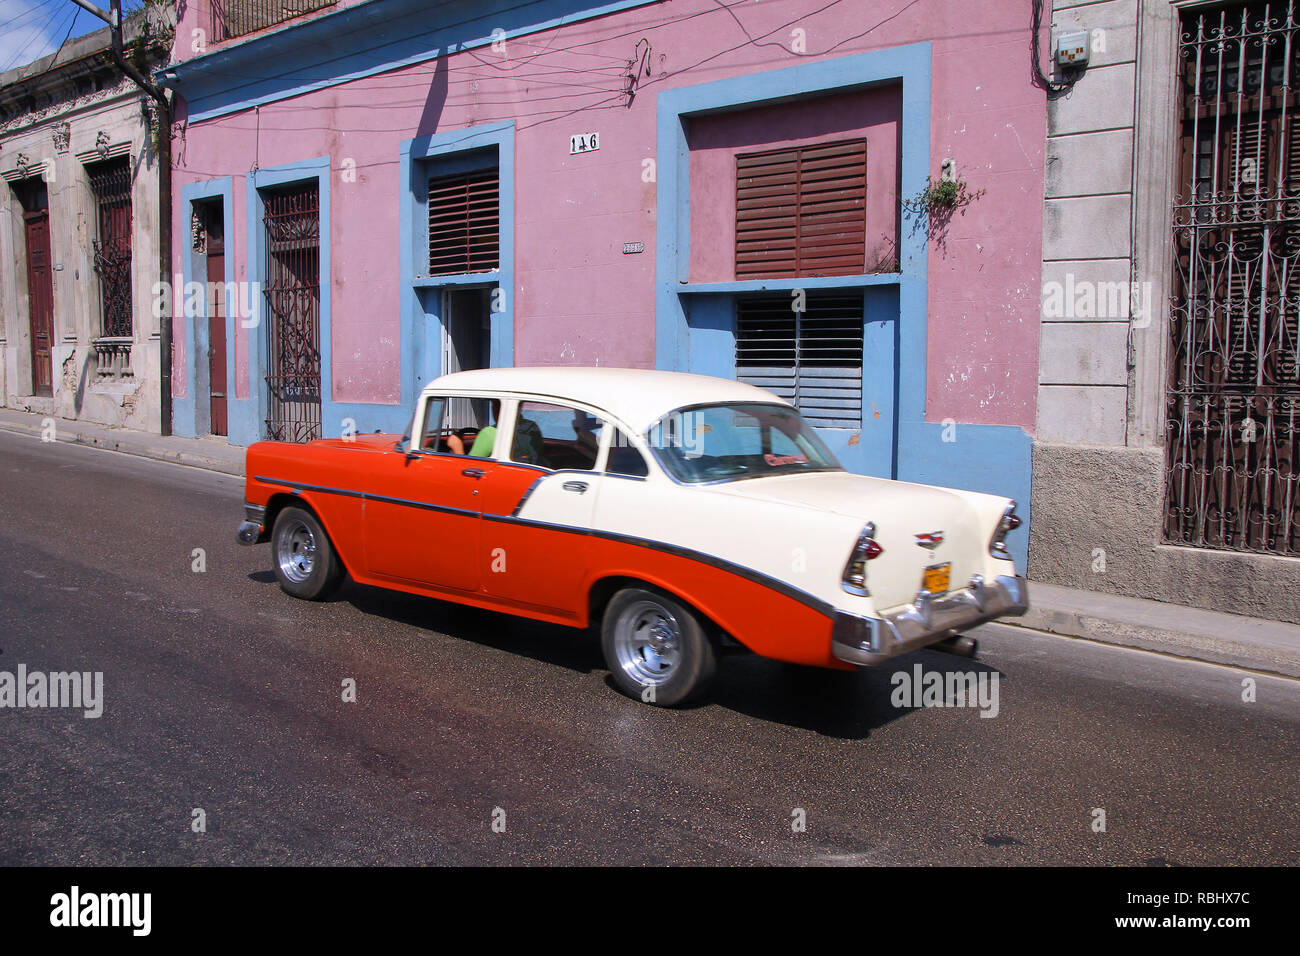 MATANZAS, CUBA - febbraio 22: Unità uomo vecchio americano auto il 22 febbraio 2011 in Matanzas, Cuba. Nuova modifica della legge consente di cubani al commercio di automobili. Vetture Foto Stock